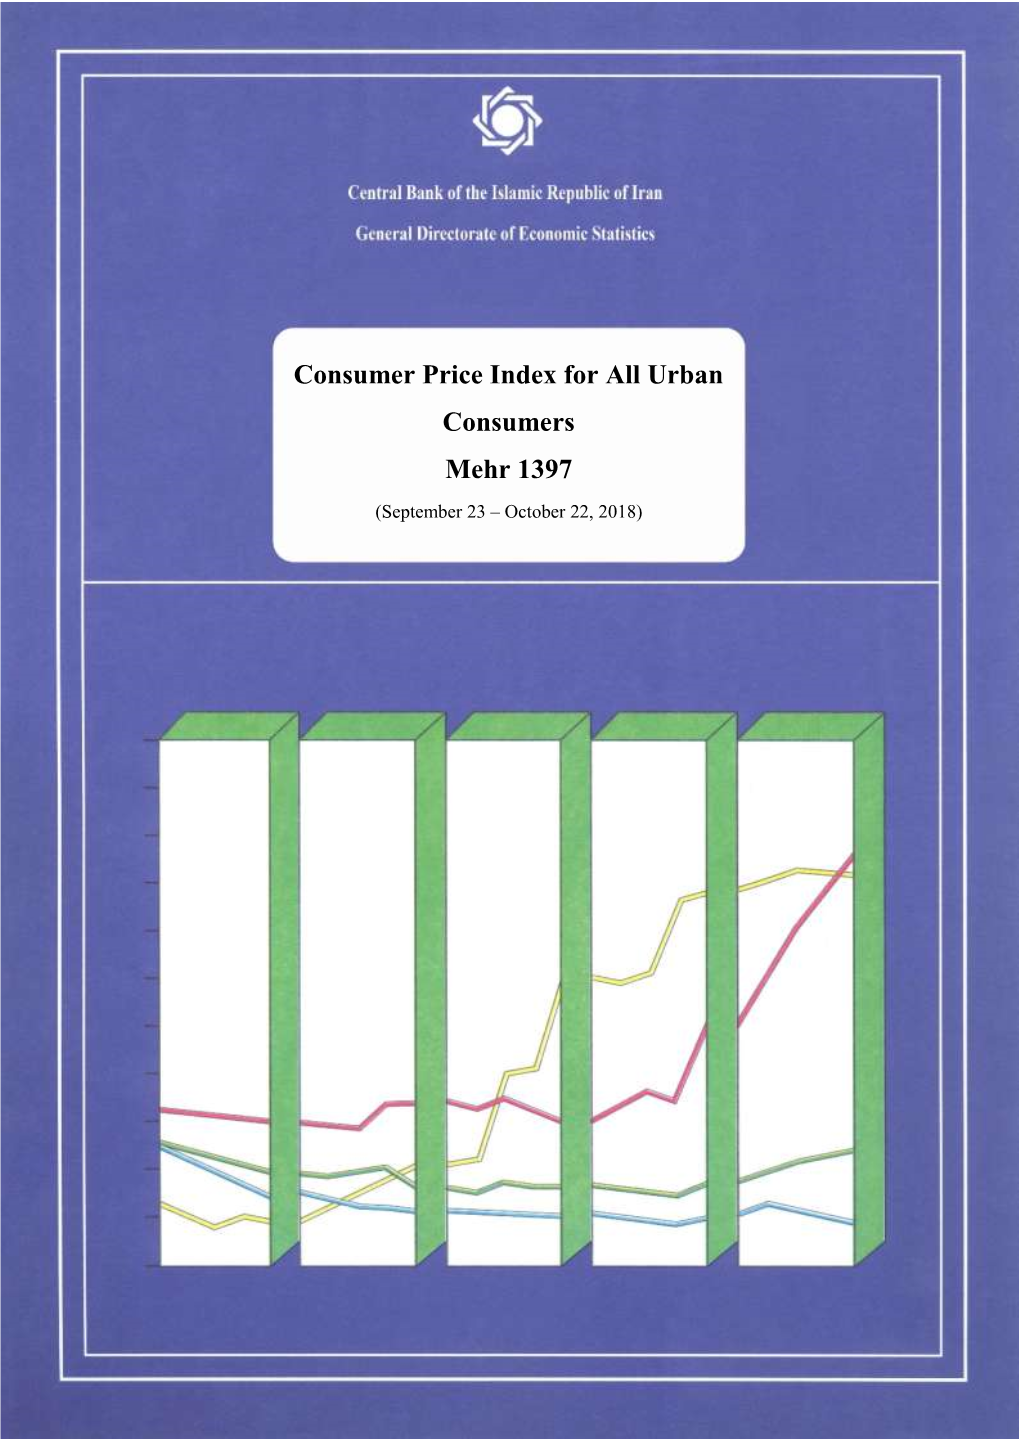 Consumer Price Index for All Urban Consumers Mehr 1397